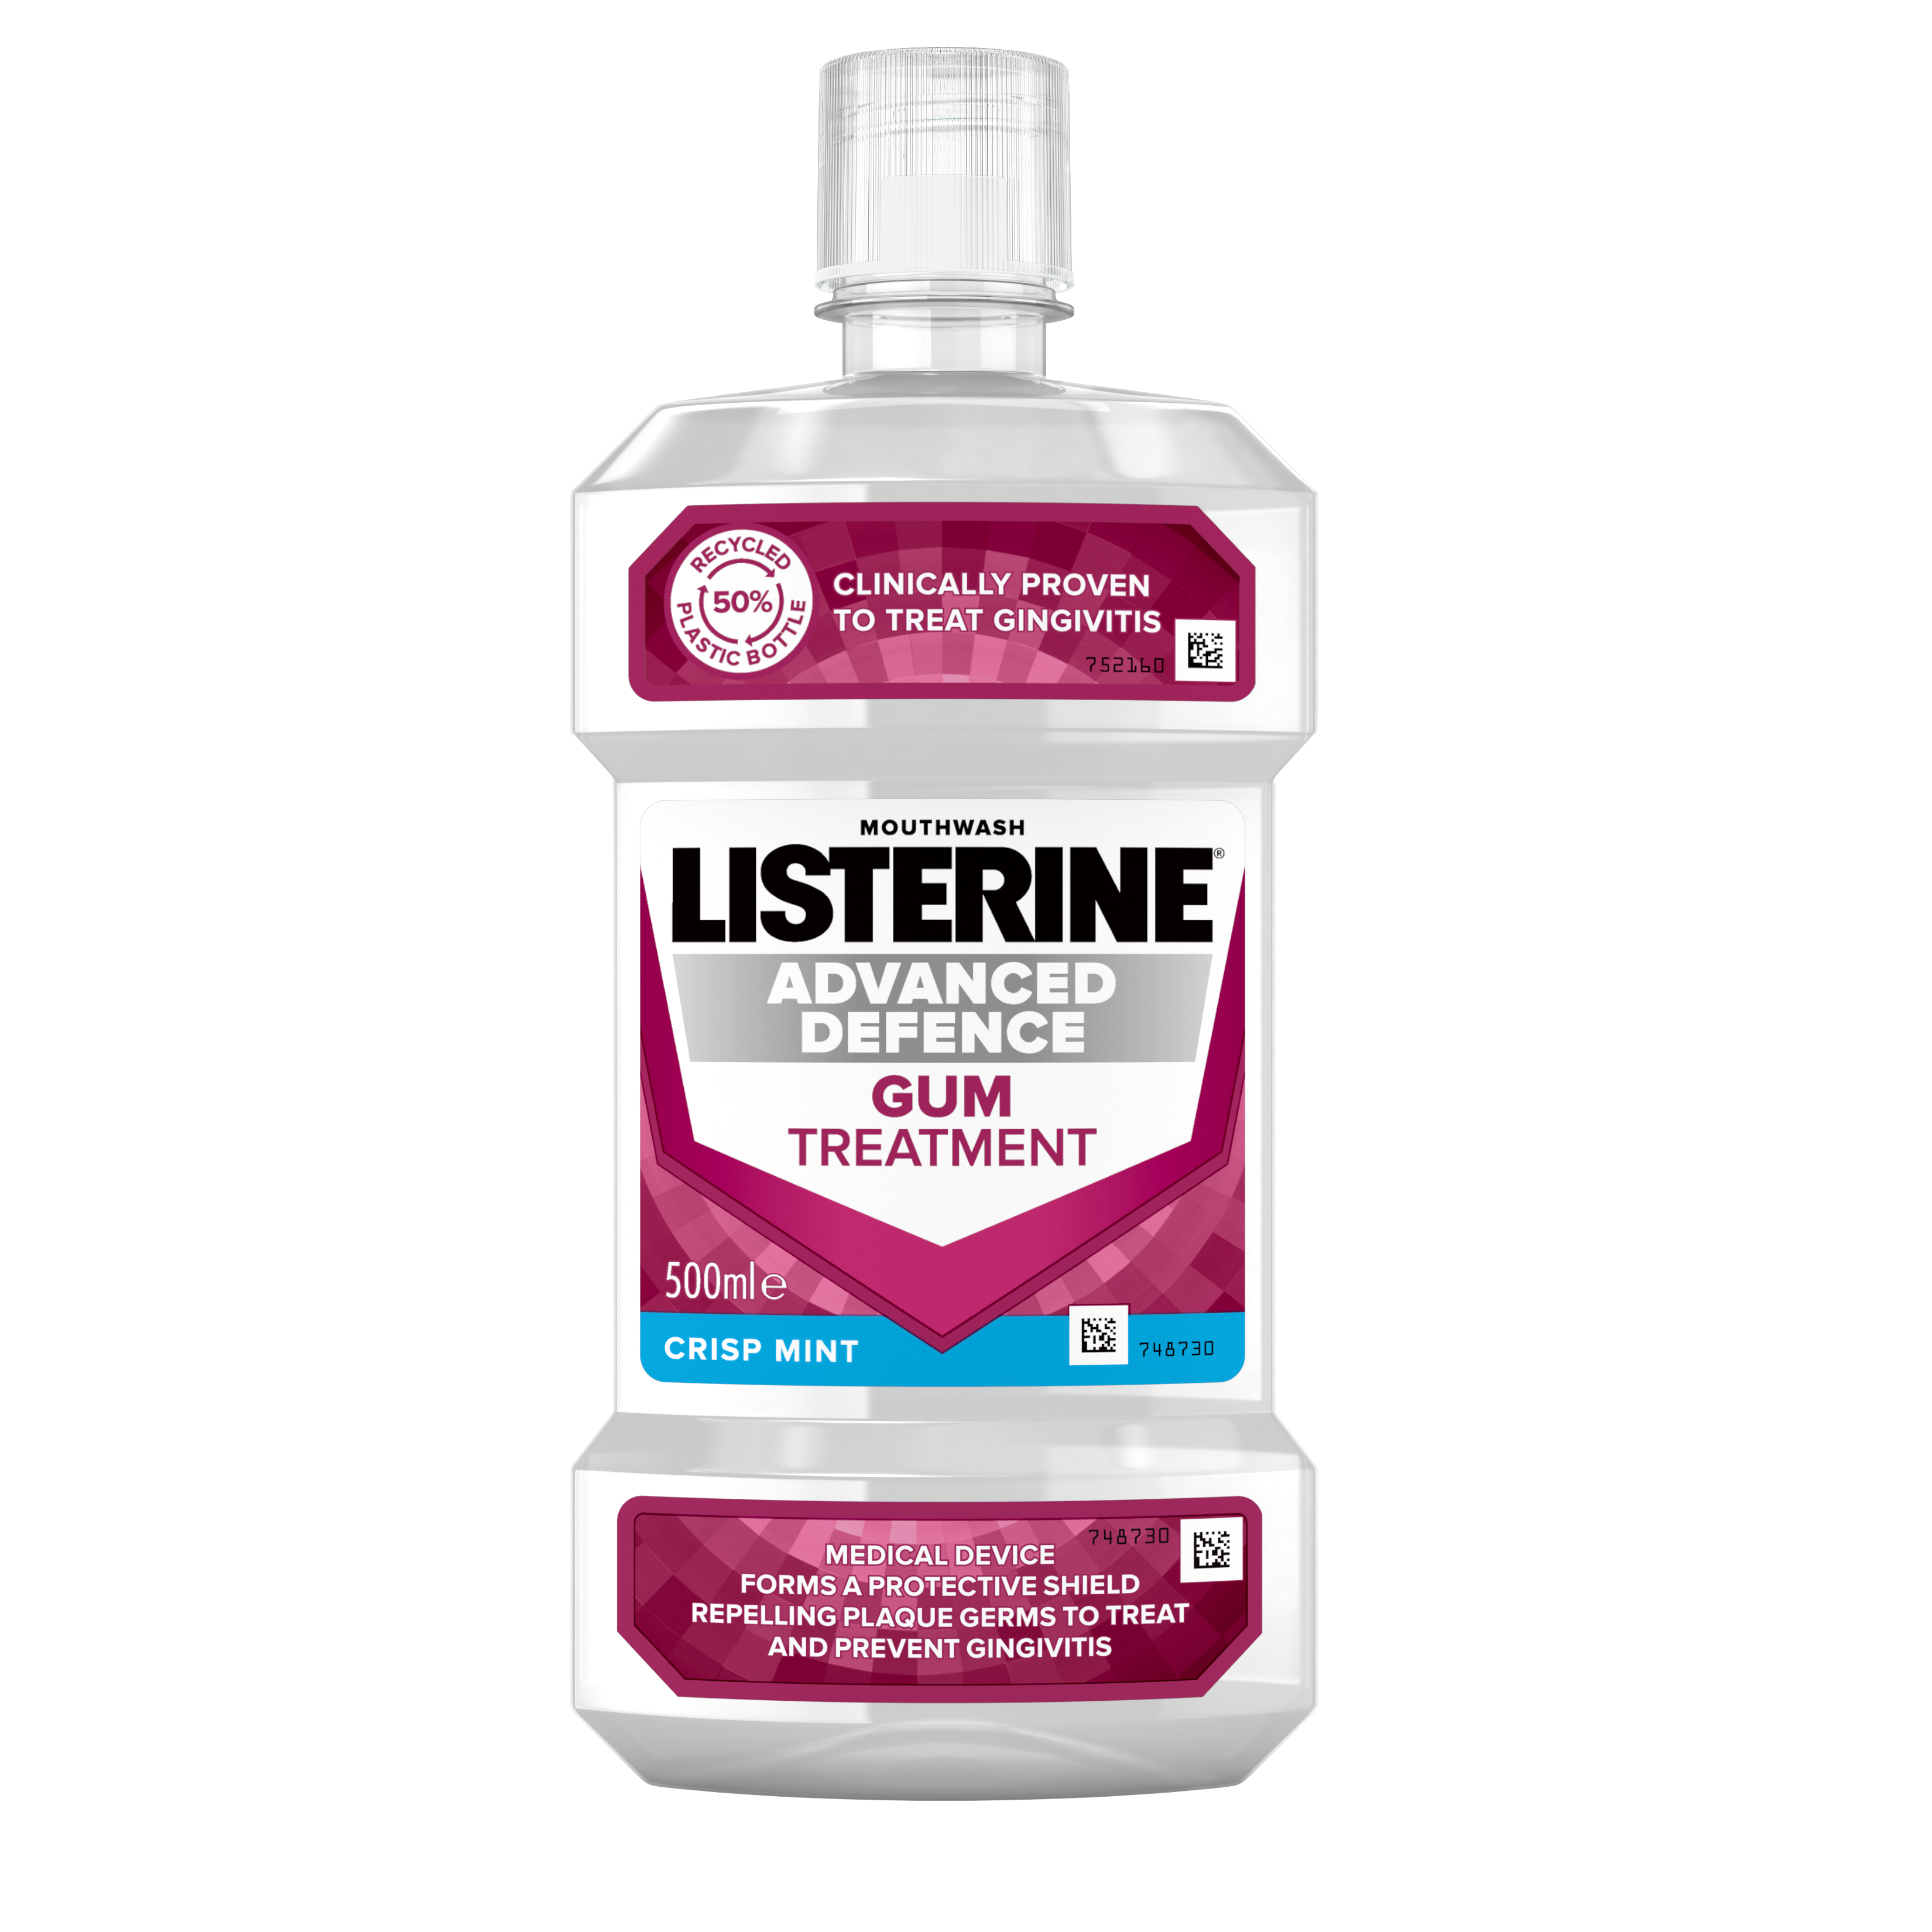 Pakchsot of Listerine Advanced Gum Defense Treatment Mouthwash Bottle